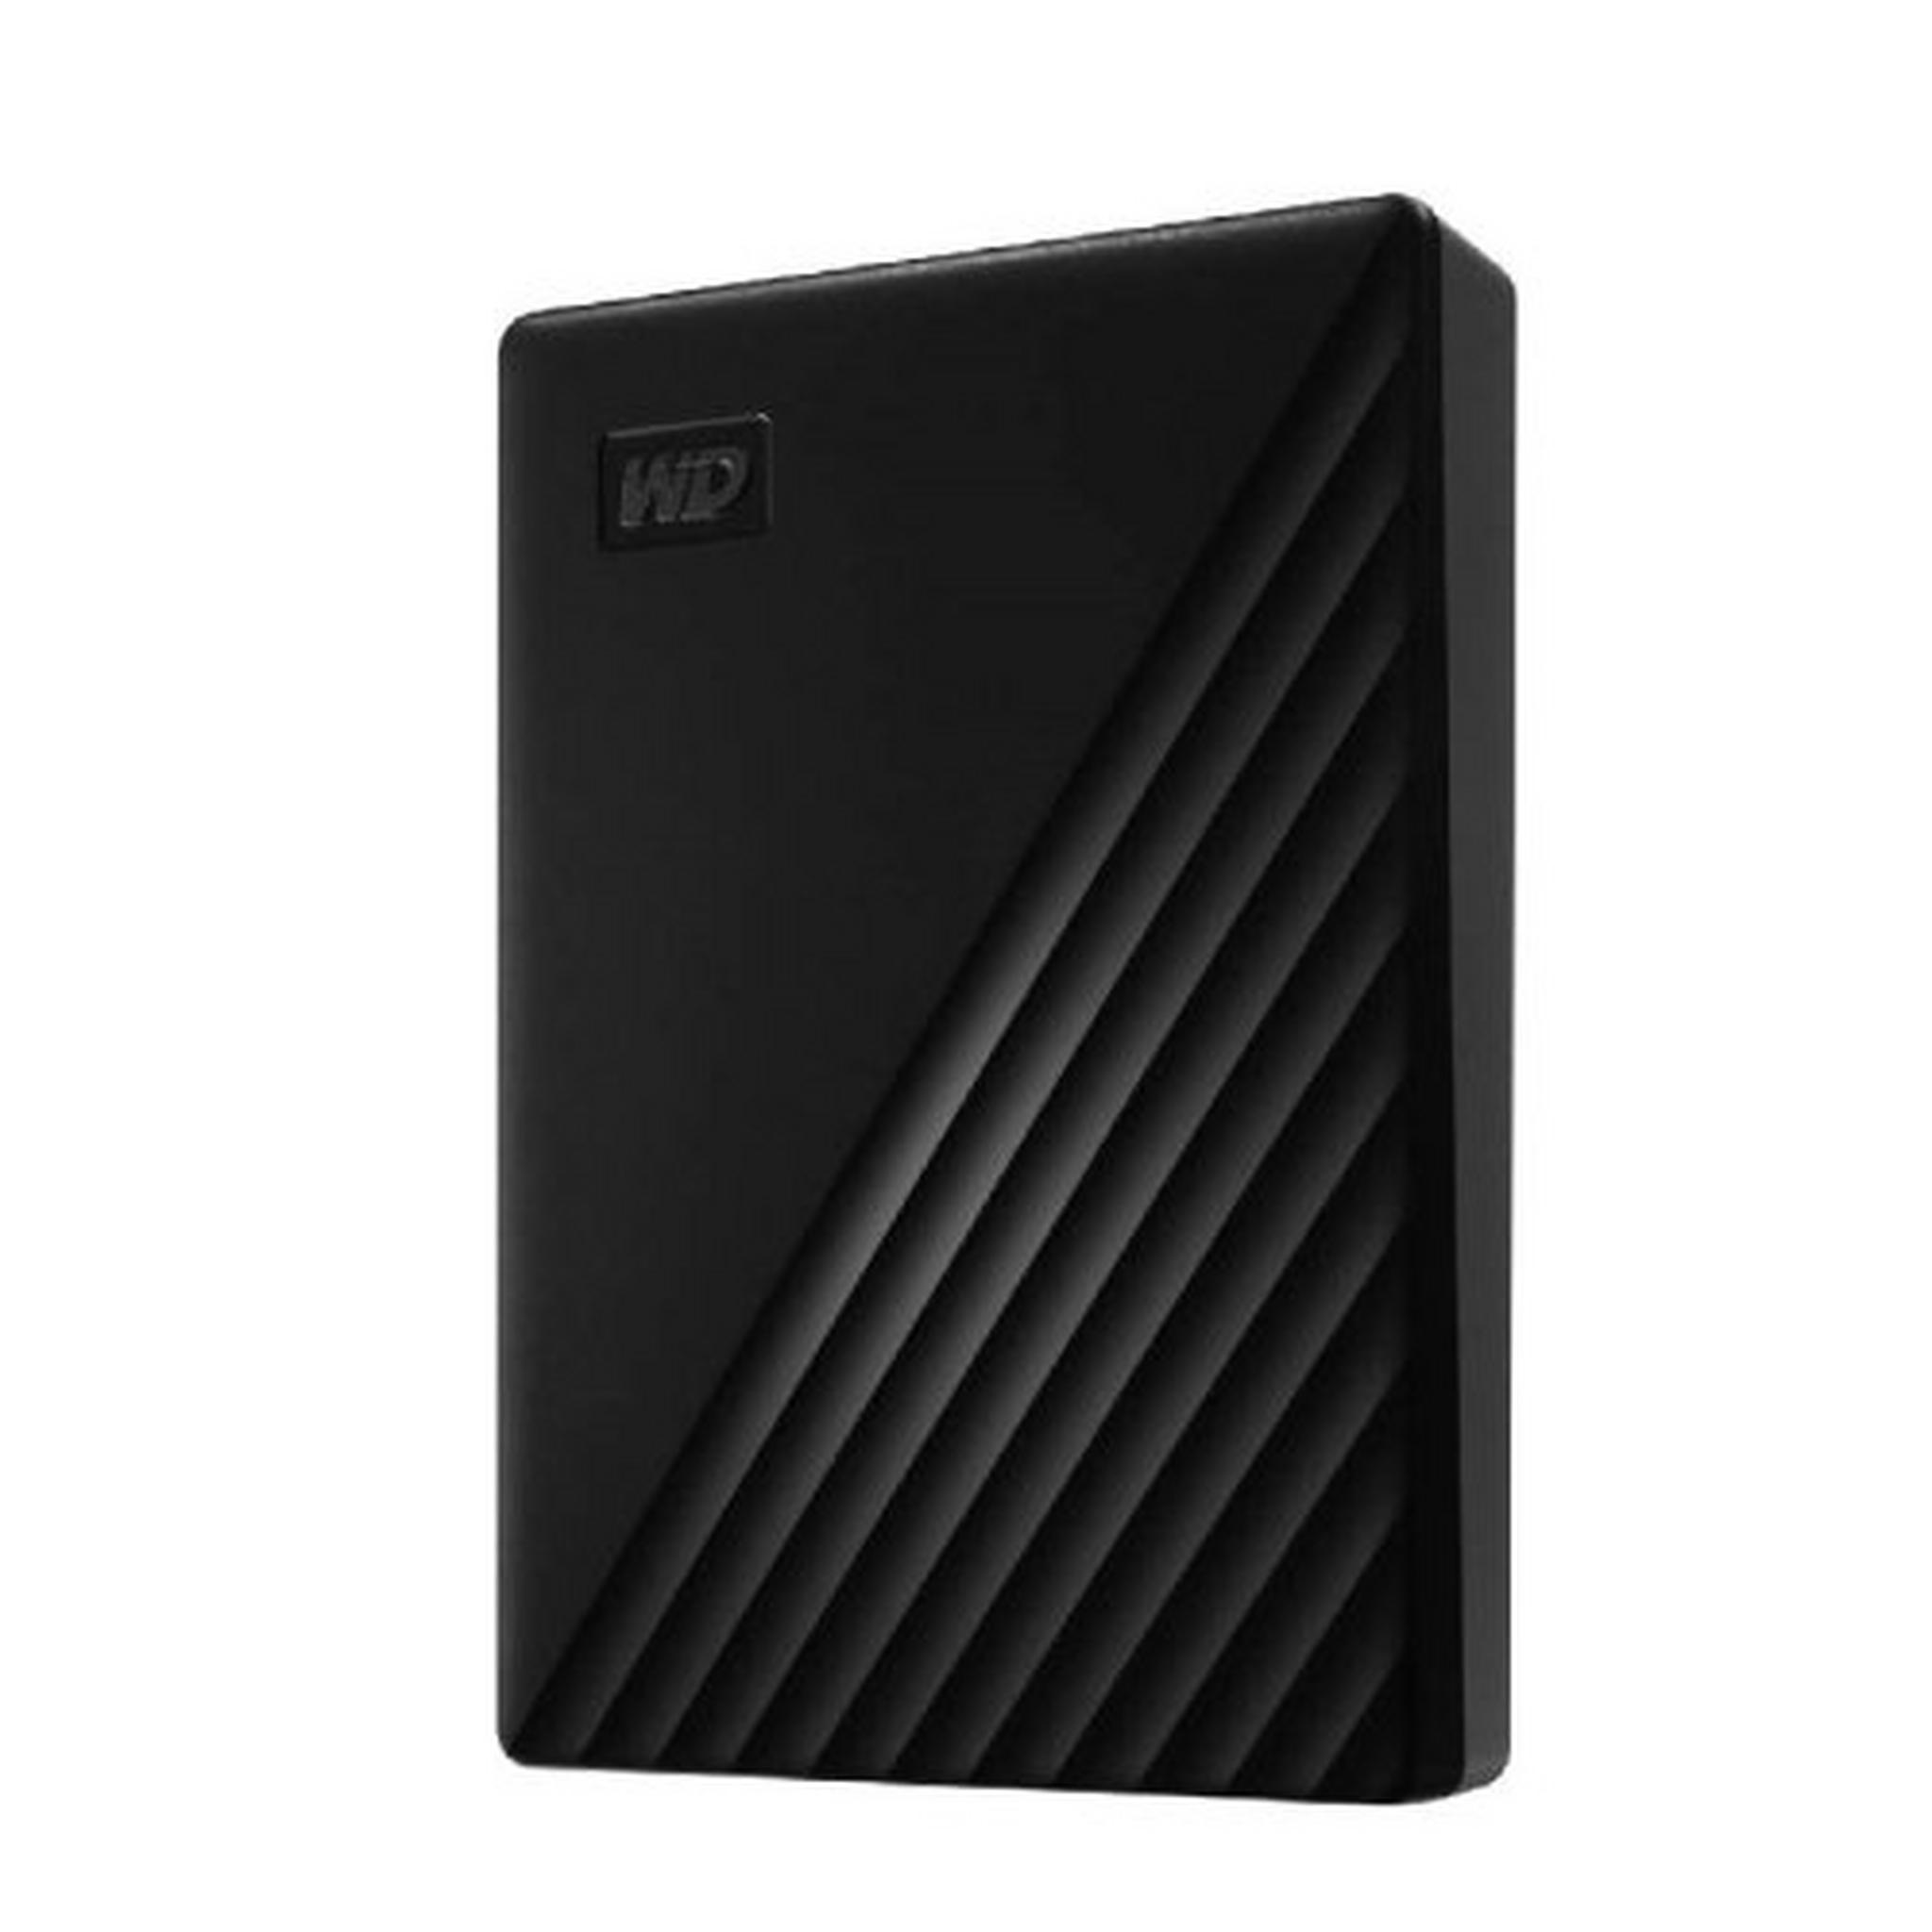 WD 4TB My Passport Portable External Hard Drive (WDBPKJ0040BBK-WESN) - Black